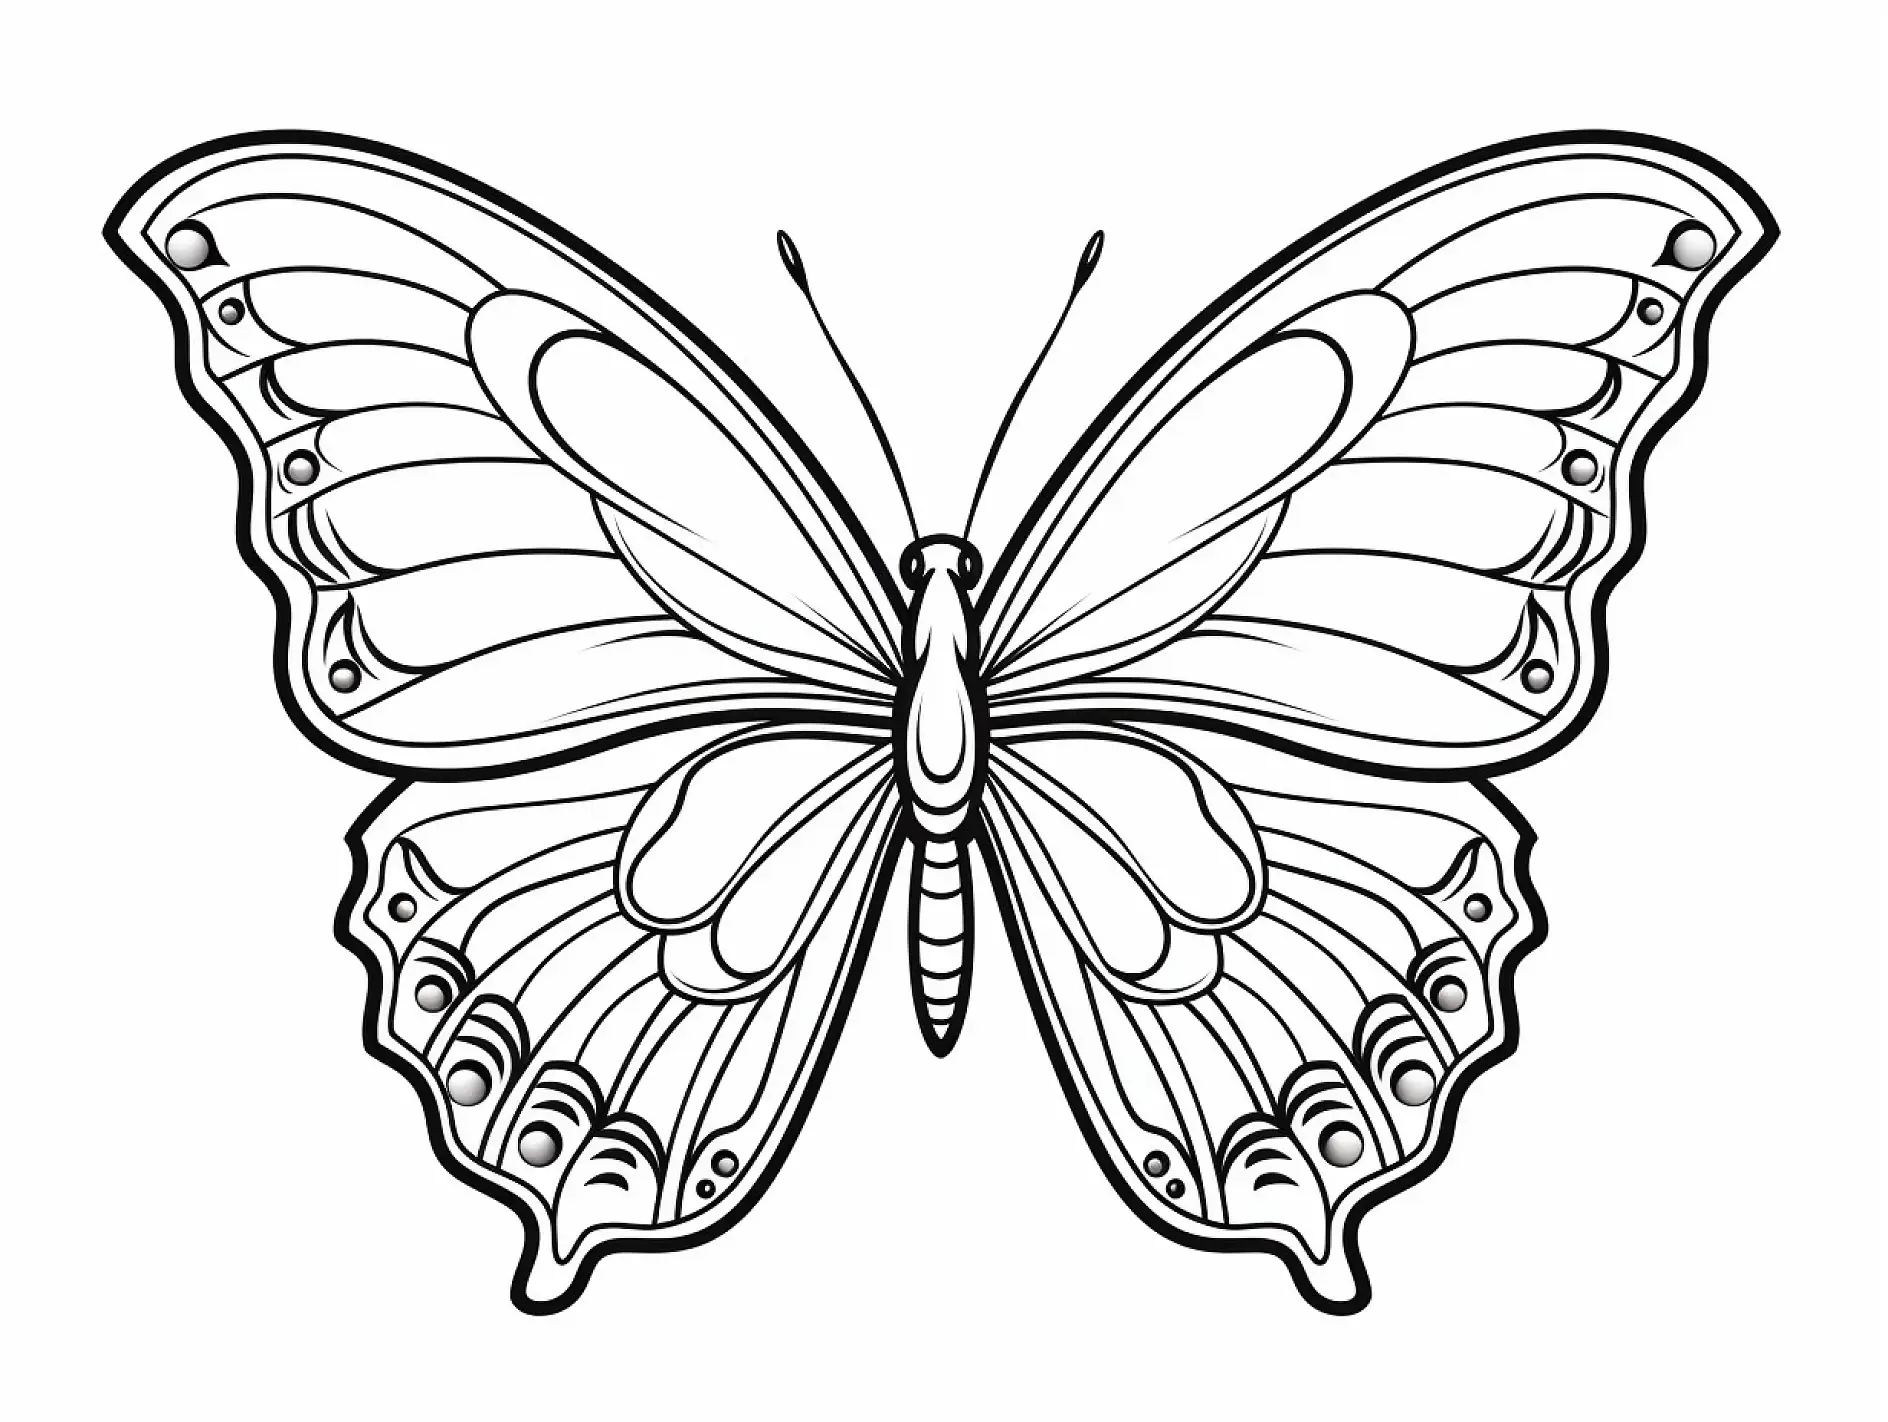 Ausmalbild Schmetterling mit detaillierten Flügelmustern